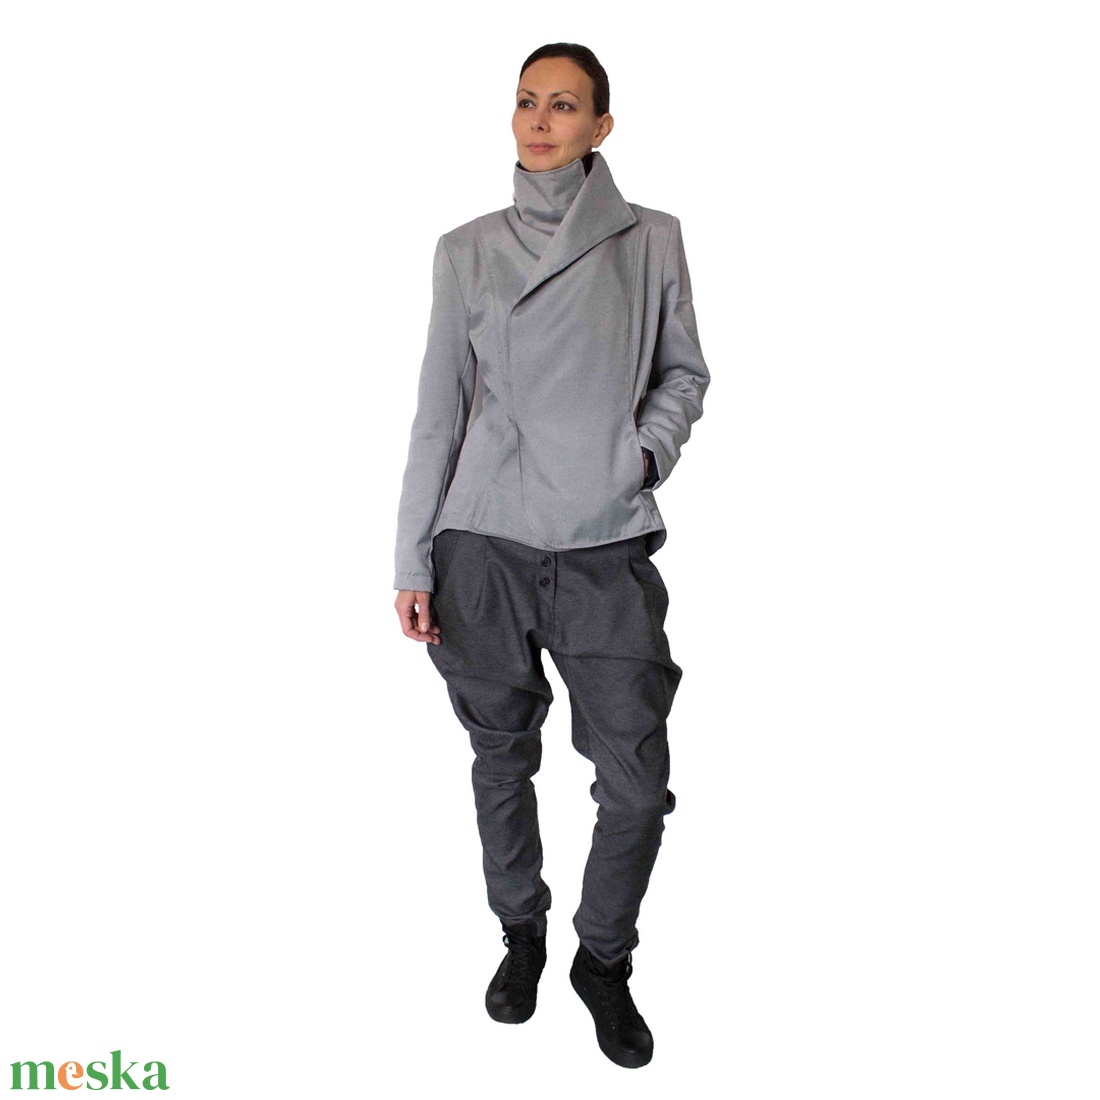 Lestat szett - aszimmetrikus aljú, átlapolt elejű, béleletlen női blézer - berakott, tűzött hosszú szárú női nadrág - ruha & divat - női ruha - nadrág - Meska.hu